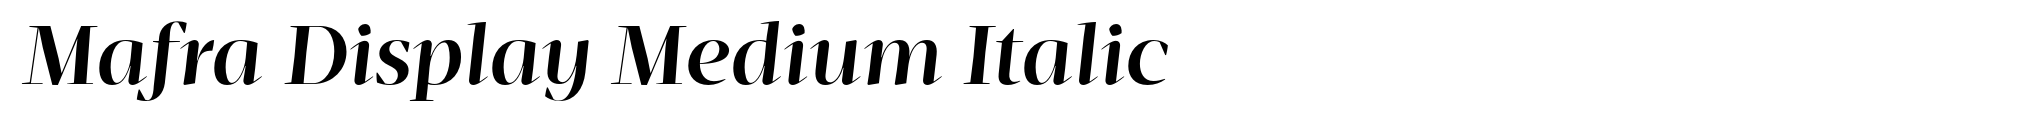 Mafra Display Medium Italic image